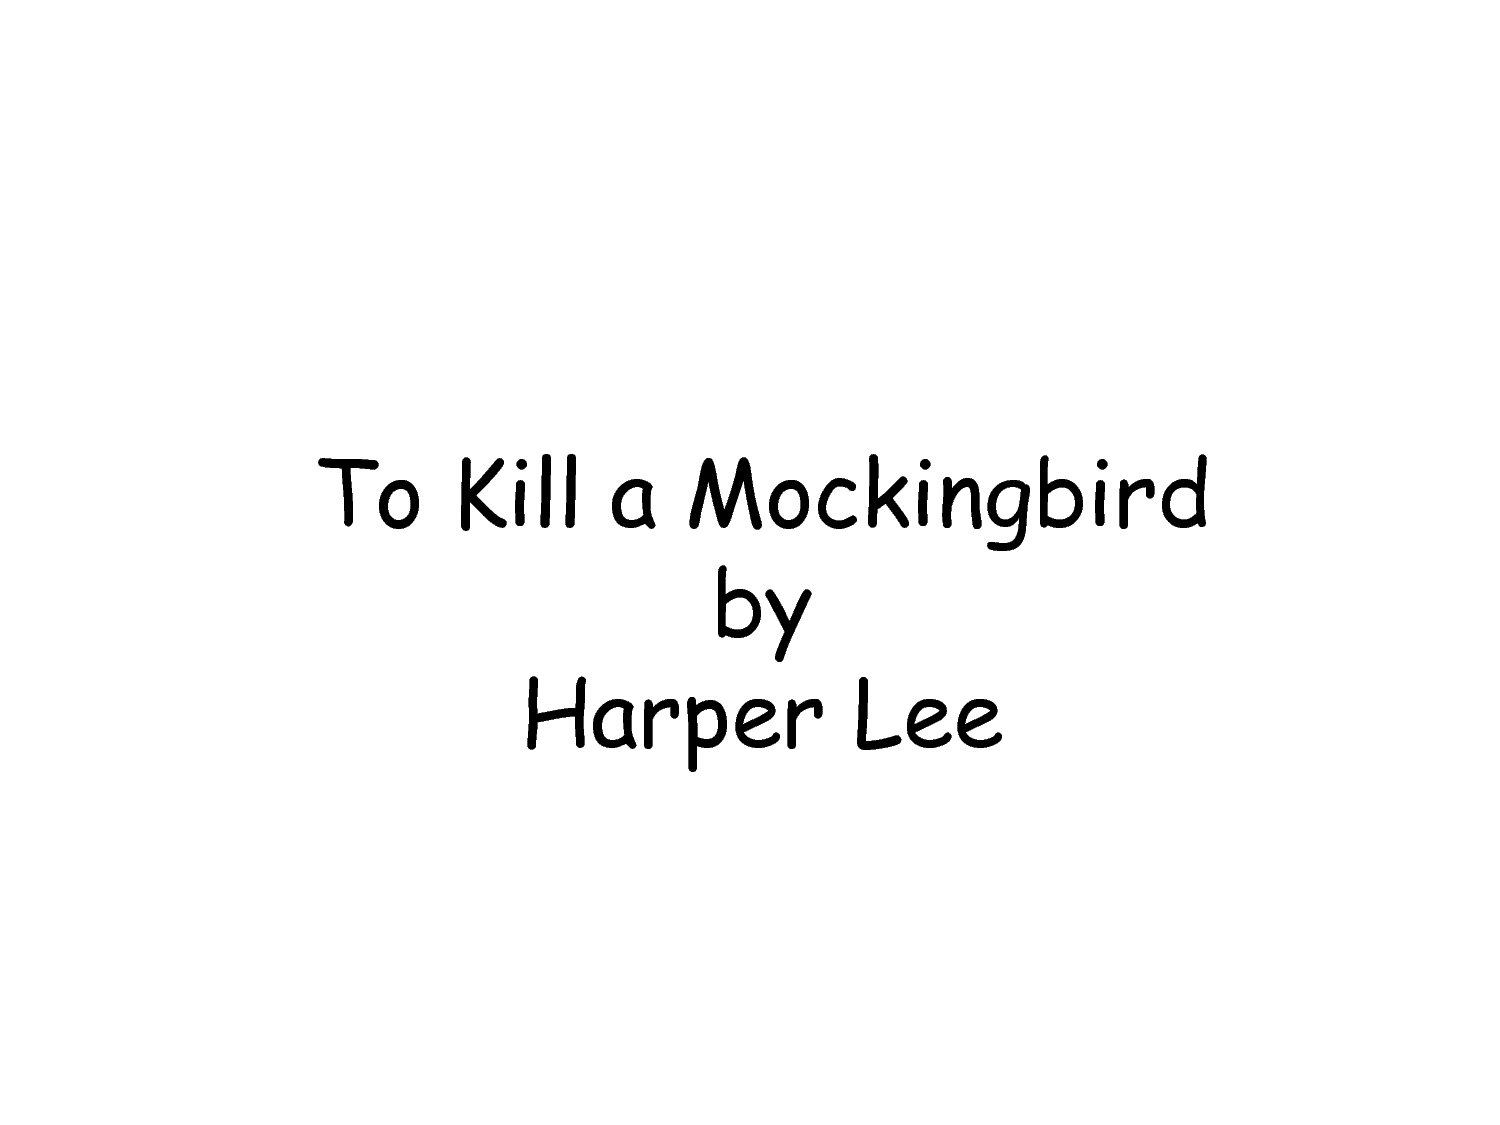 To Kill a Mockingbird Summary